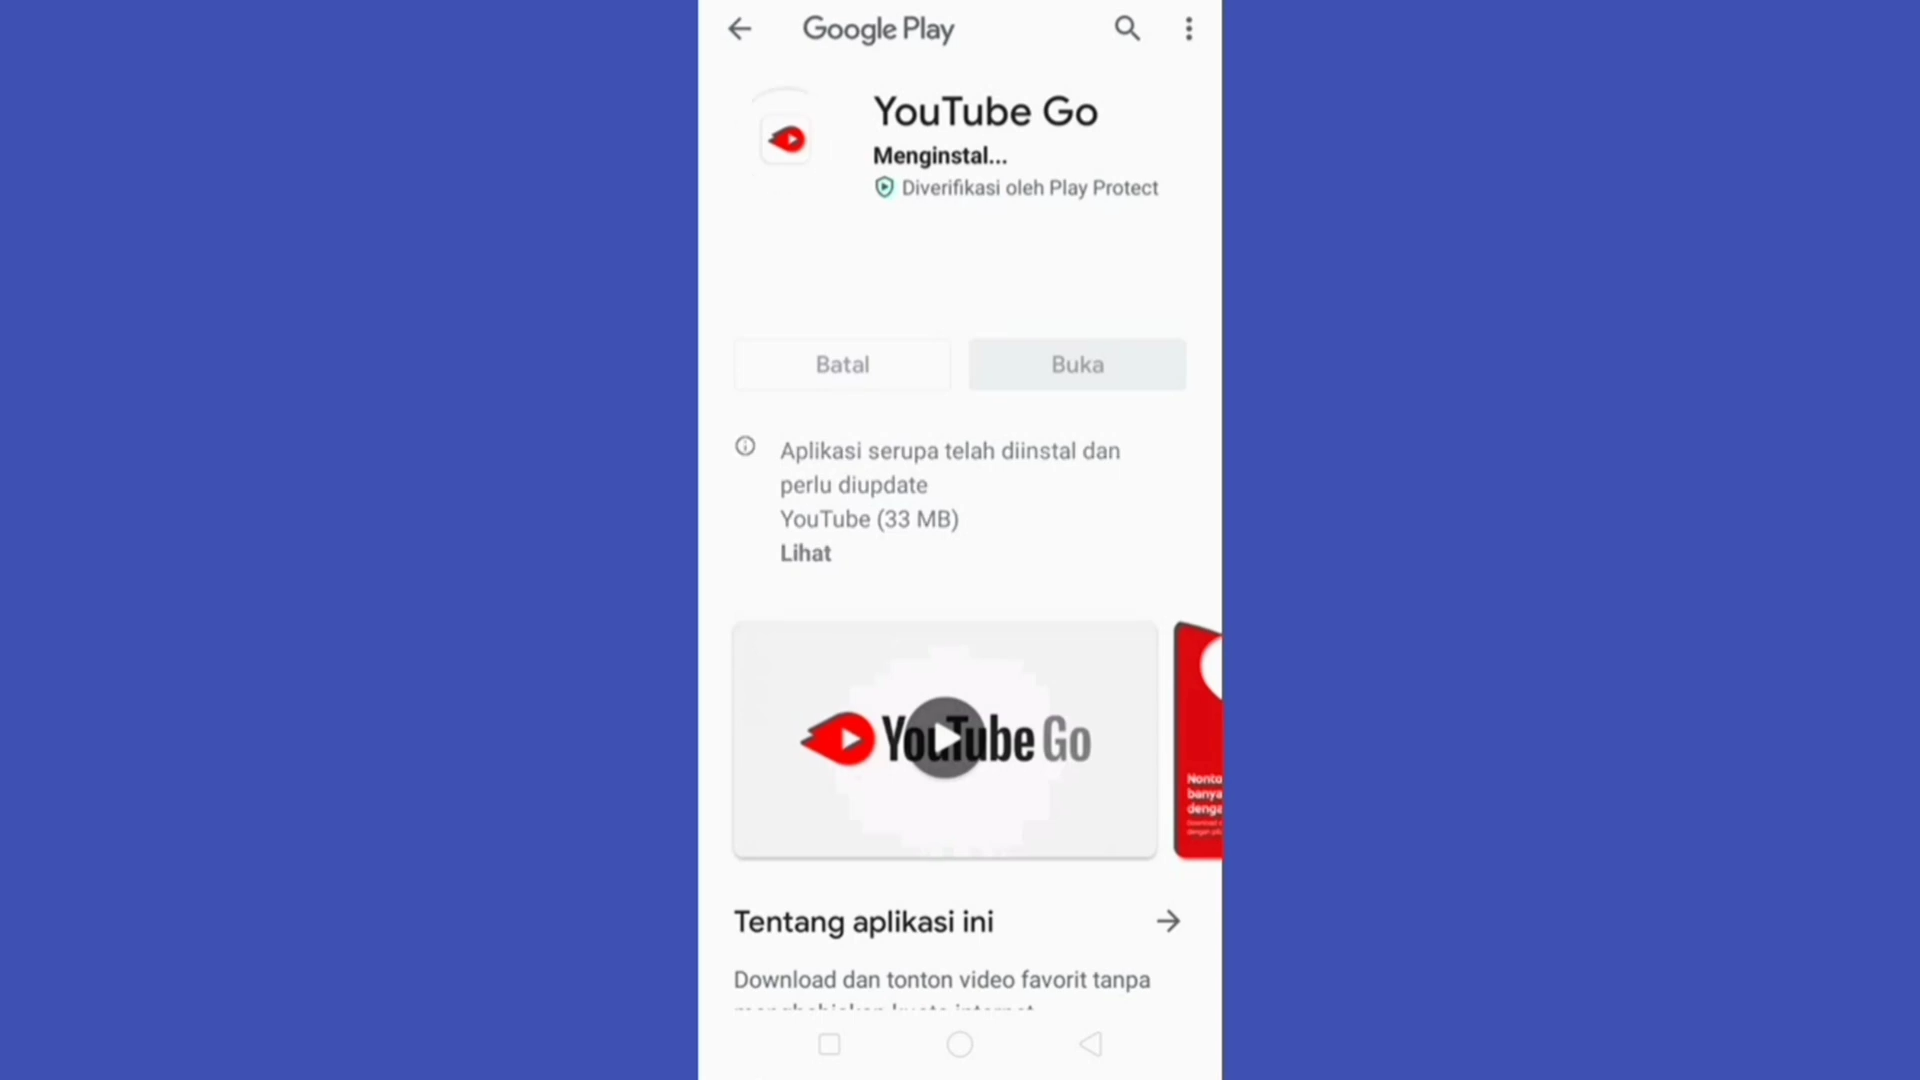 YouTube Go rejoindra bientôt le cimetière Google